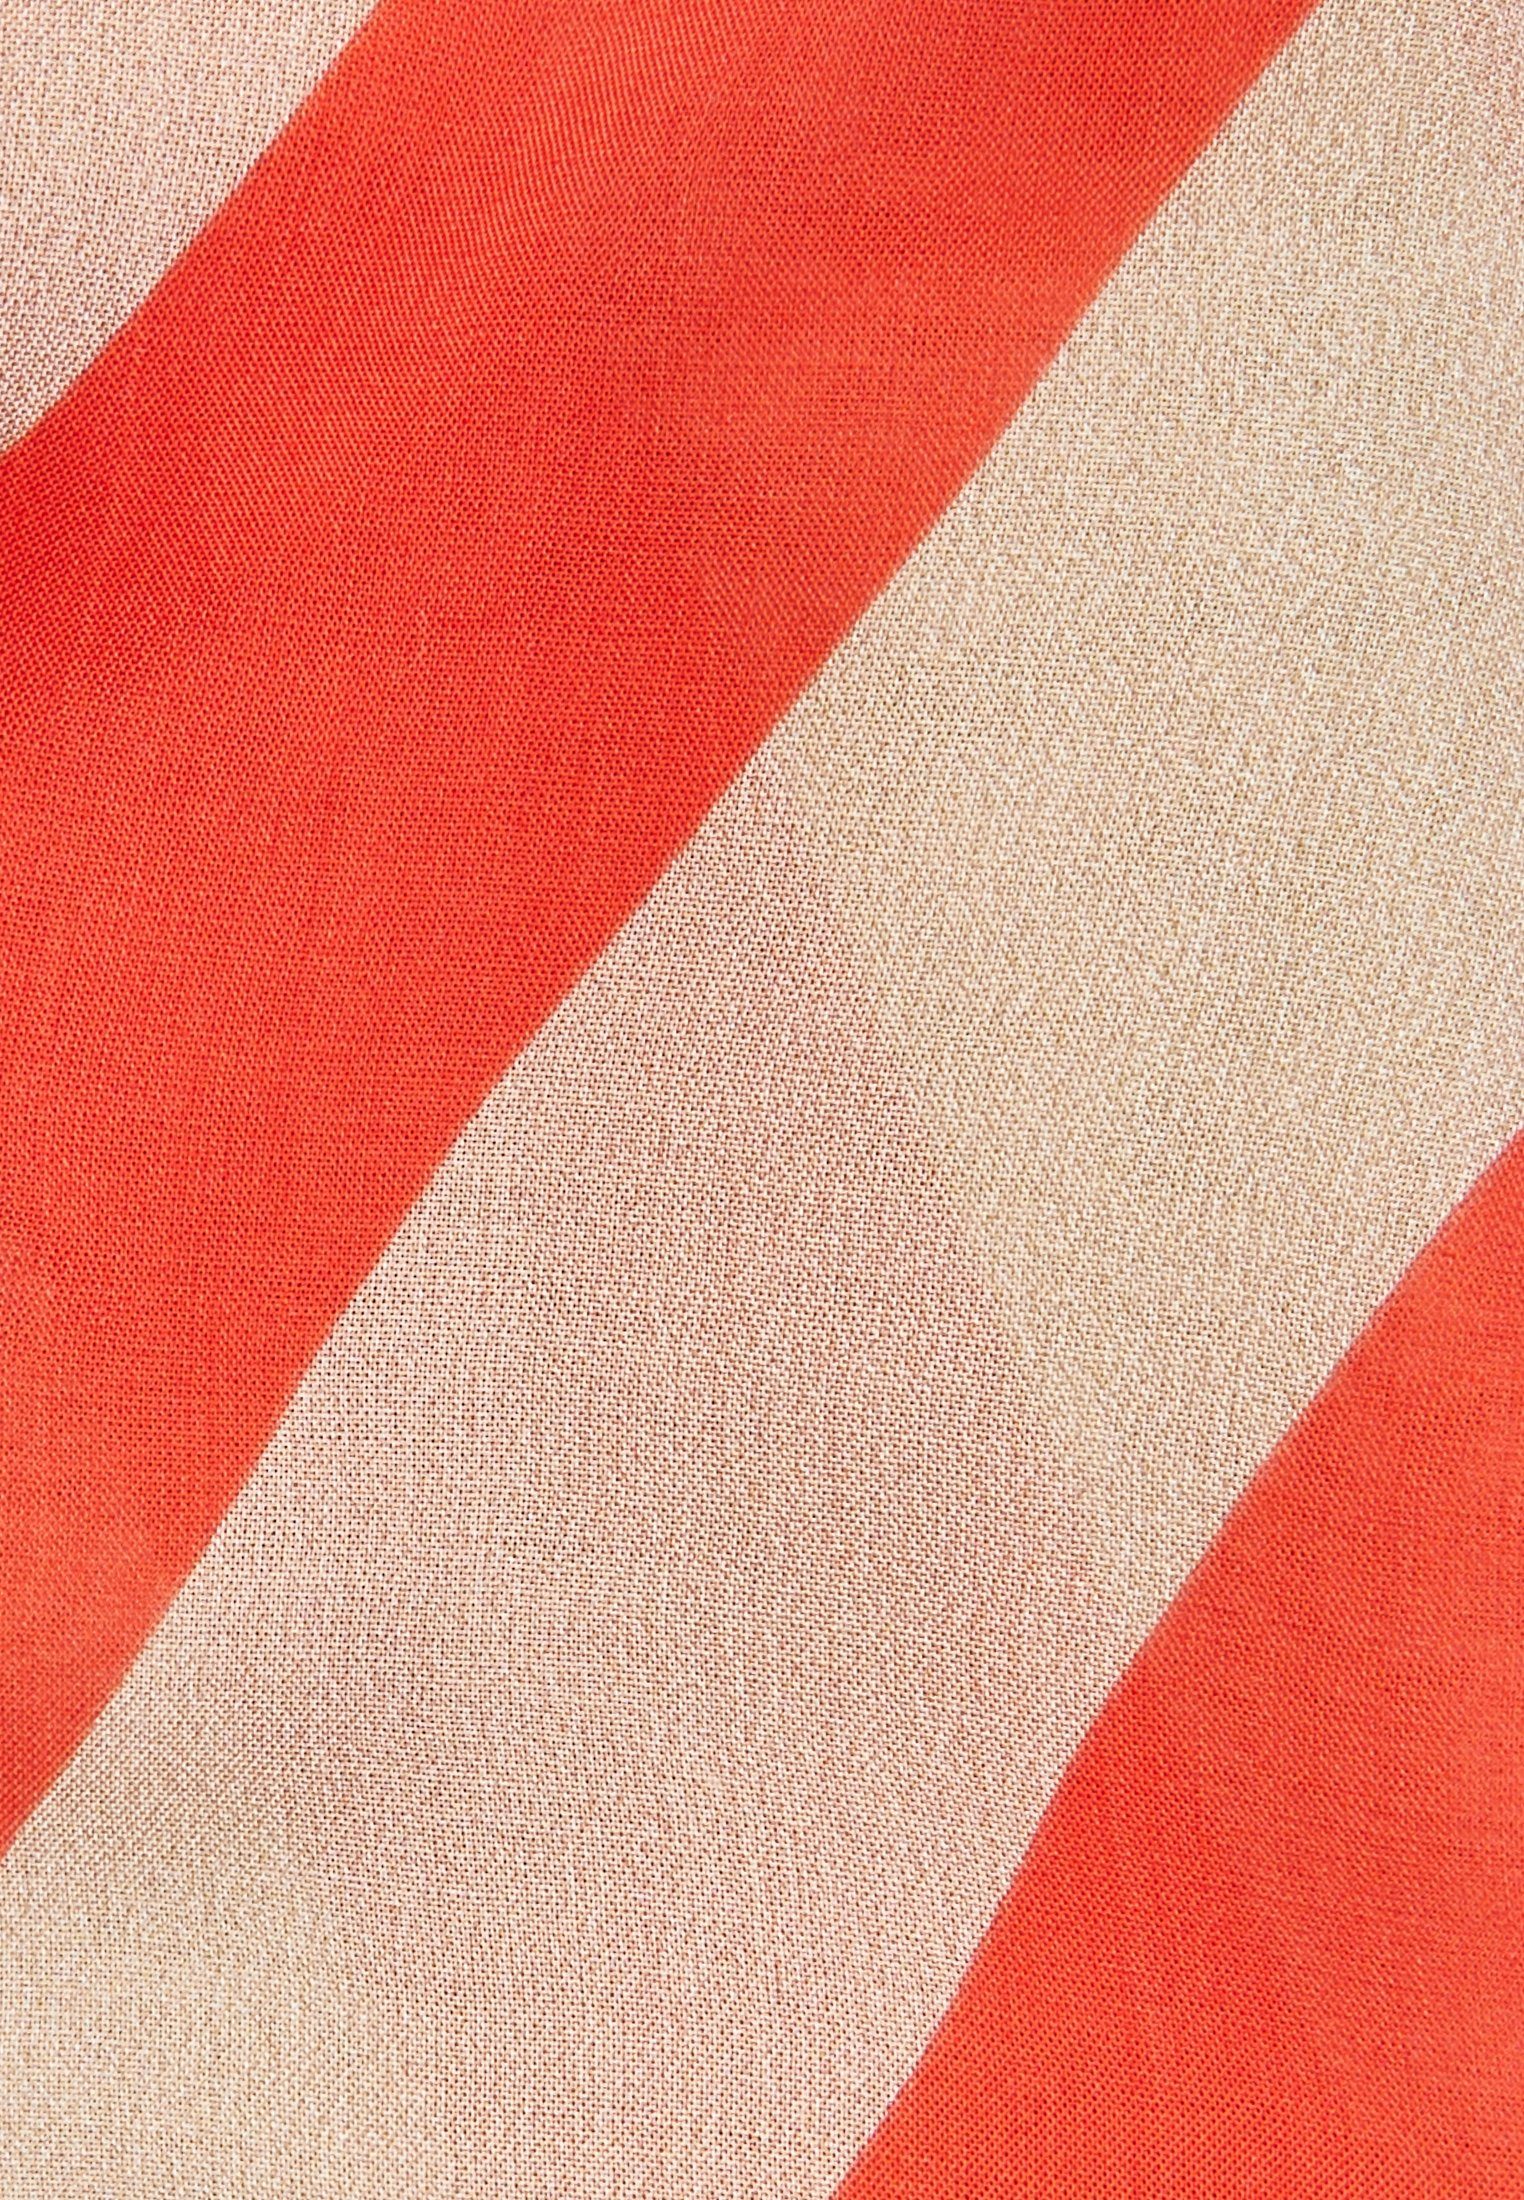 MARC AUREL diagonalem hot Modetuch, mit orange varied Blockstreifenprint